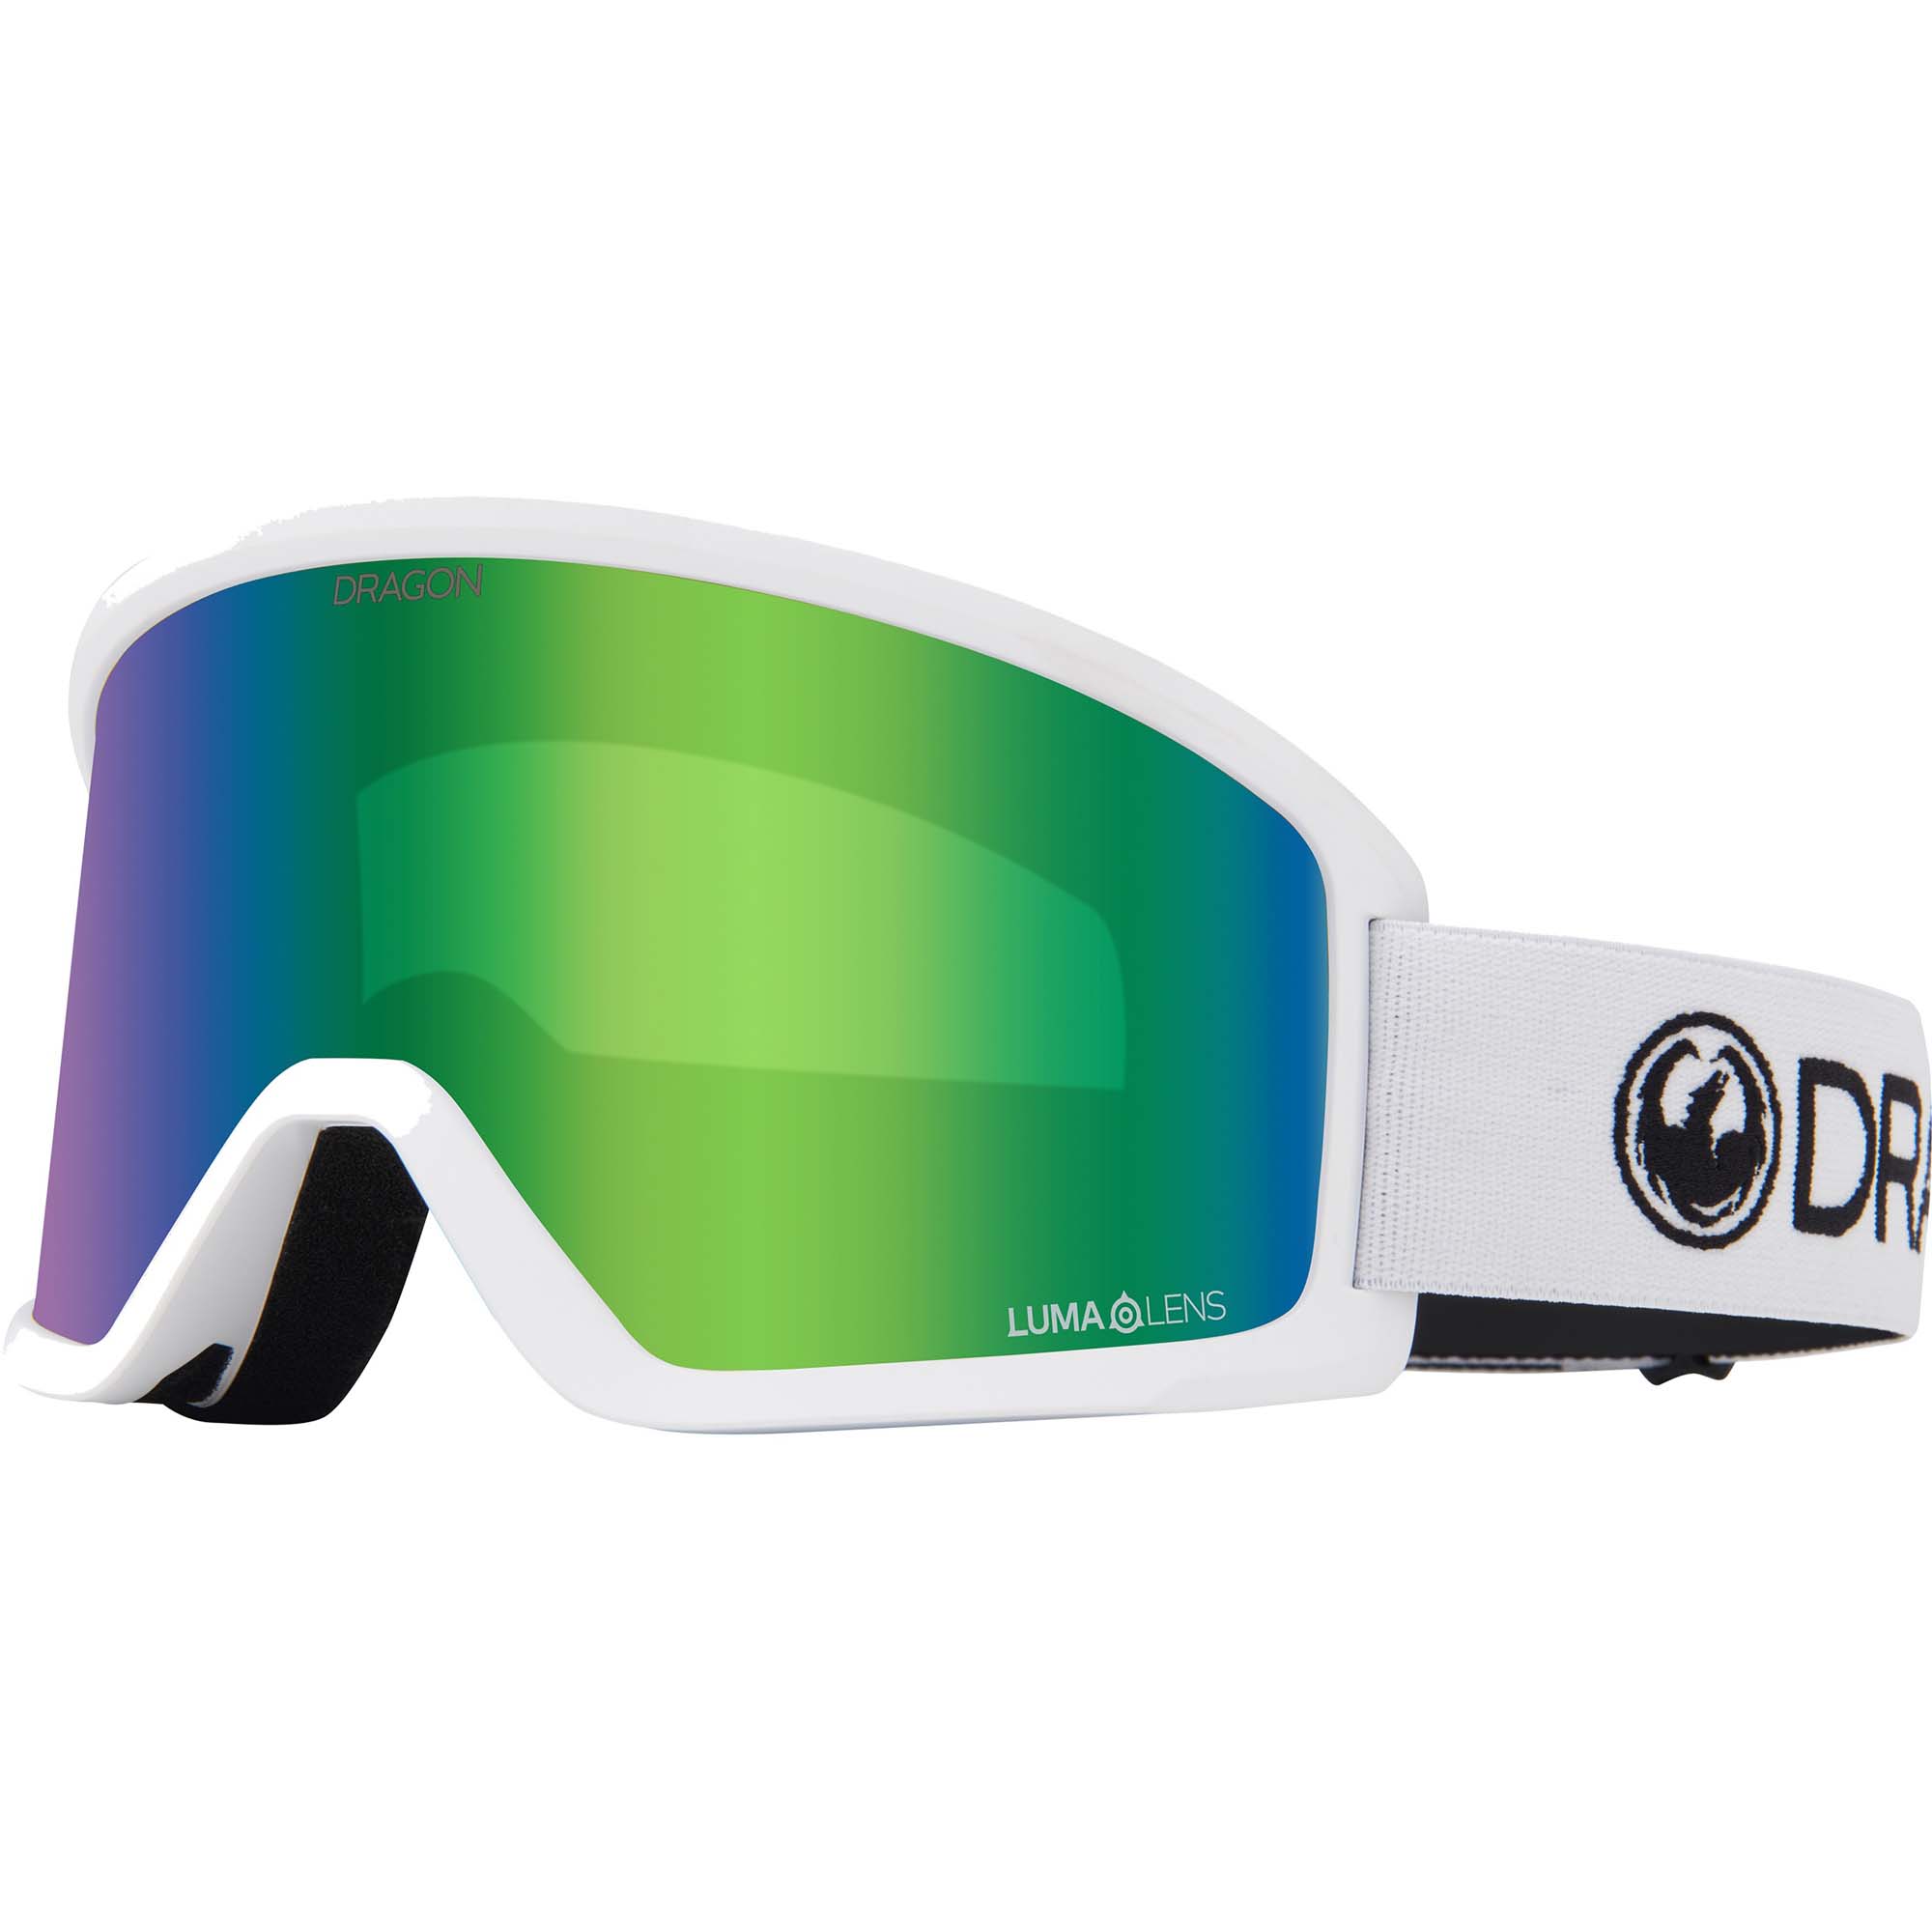 Photos - Ski Goggles Dragon DX3 OTG Ski/Snow Goggles, M White Frame/Lumalens Green Ion 40494/61 